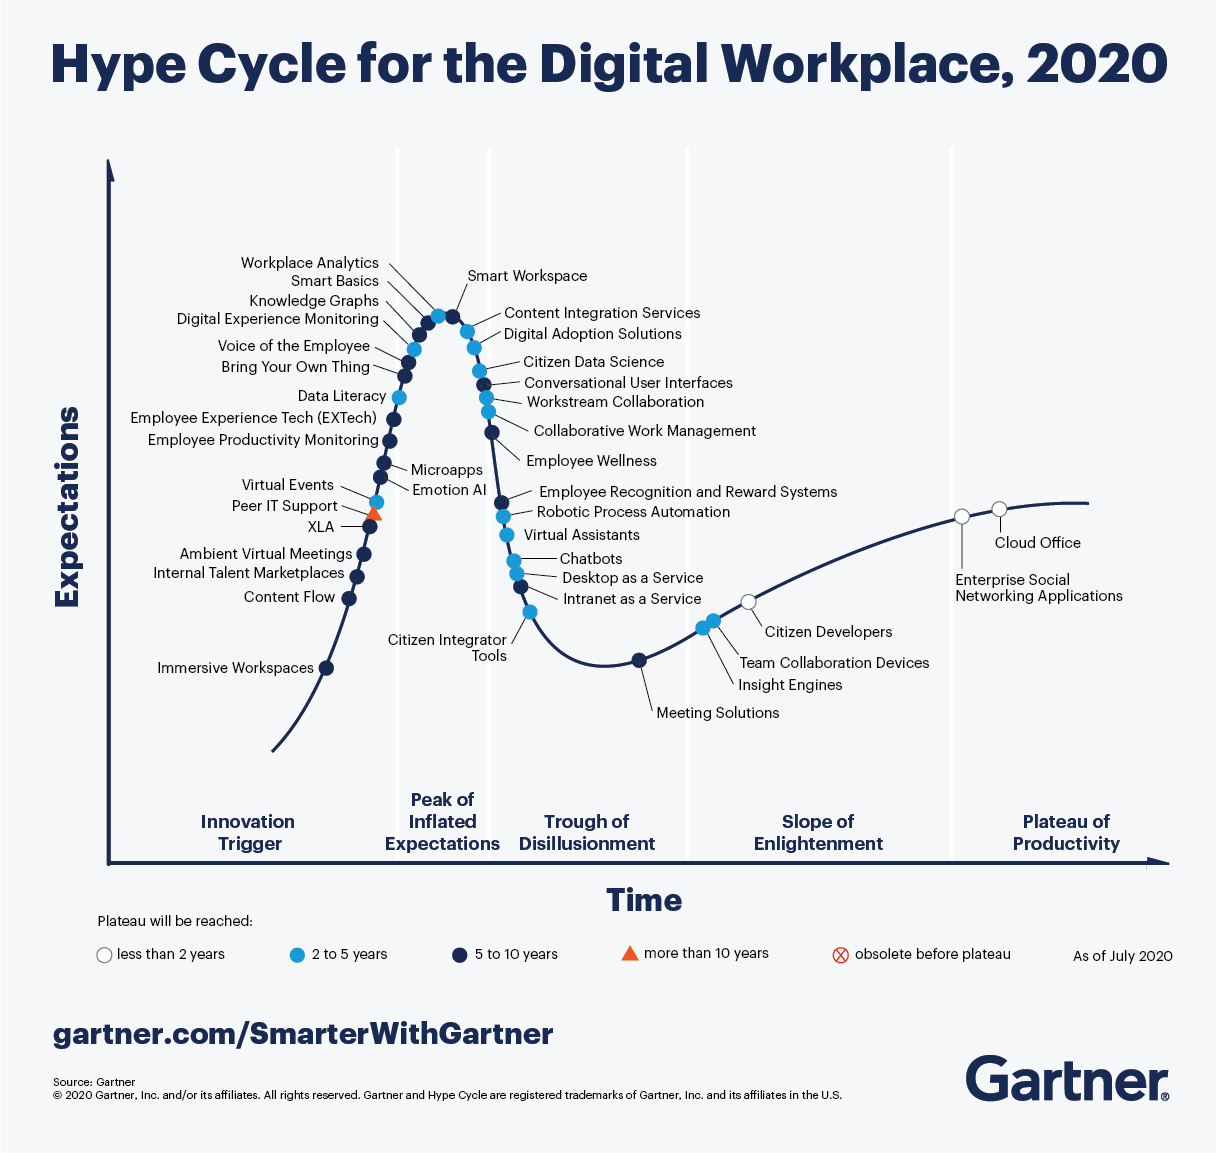 O Gartner Hype Cycle for the Digital Workplace de 2020 mostra as principais tendências para o ambiente de trabalho digital, às quais os diretores de informação devem prestar atenção nos próximos anos.